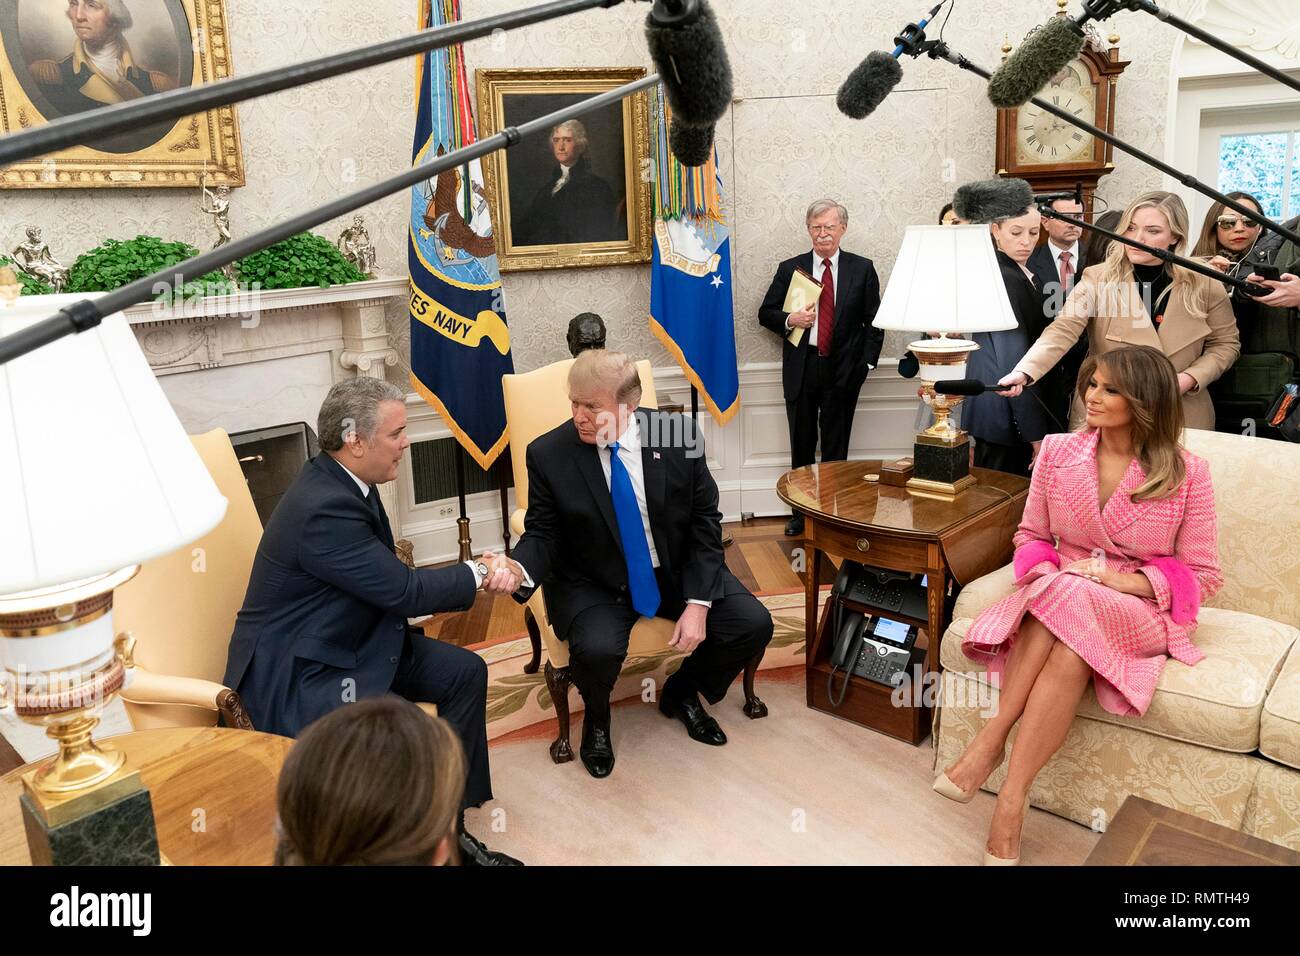 Us-Präsident Donald Trump und First Lady Melania Trump Treffen mit kolumbianischen Präsident Ivan Duque Marquez und seine Frau Maria Juliana Ruiz im Oval Office des Weißen Hauses Februar 13, 2019 in Washington, DC. Stockfoto